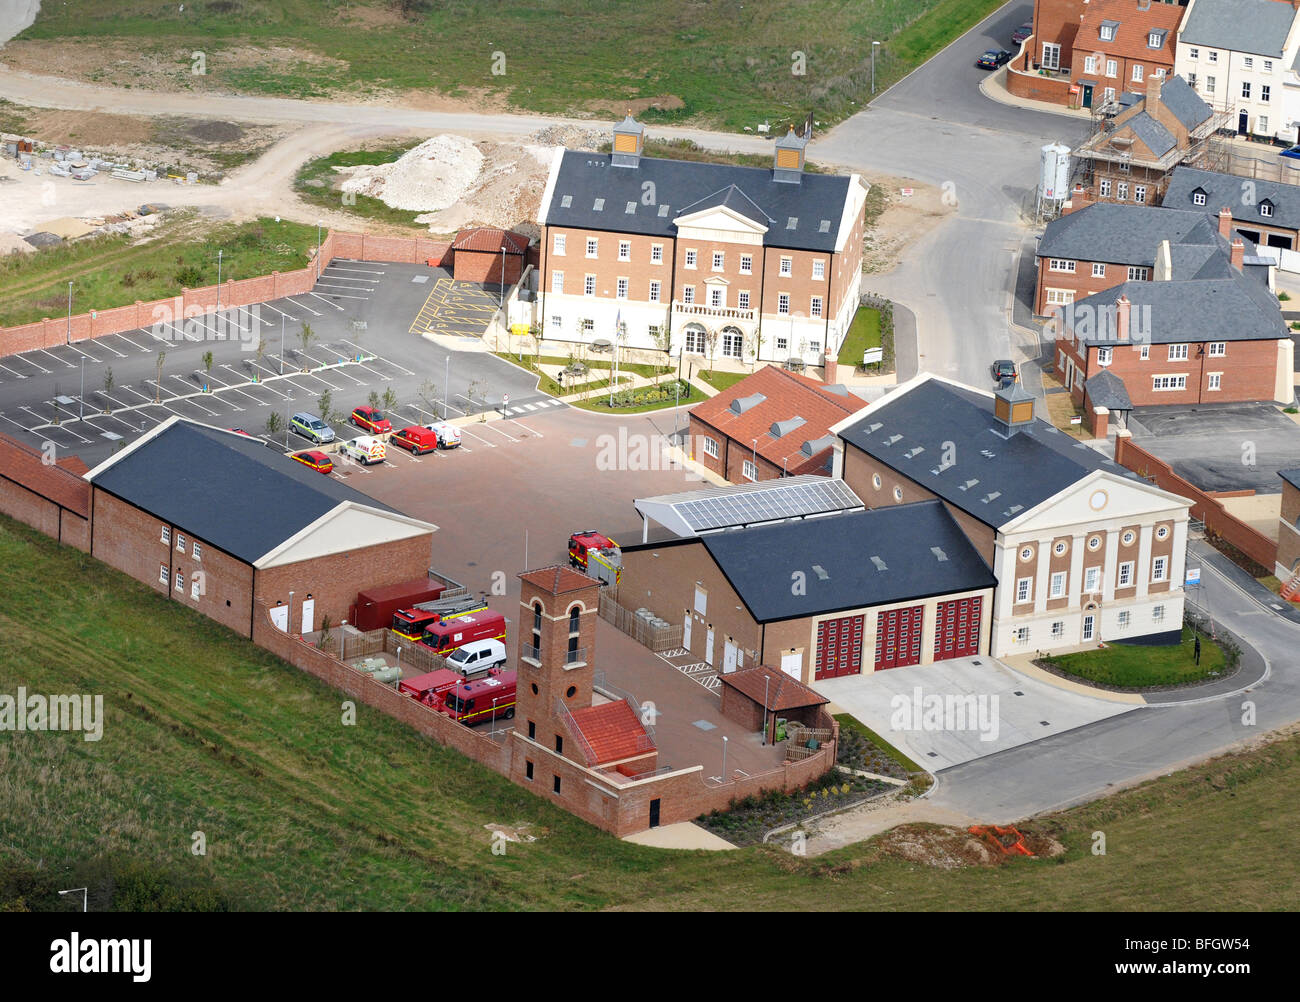 Fire Station 2004/2005 dans le Dorset, Village 2004/2005 Fire Station, vue aérienne de la station de feu 2004/2005 Banque D'Images